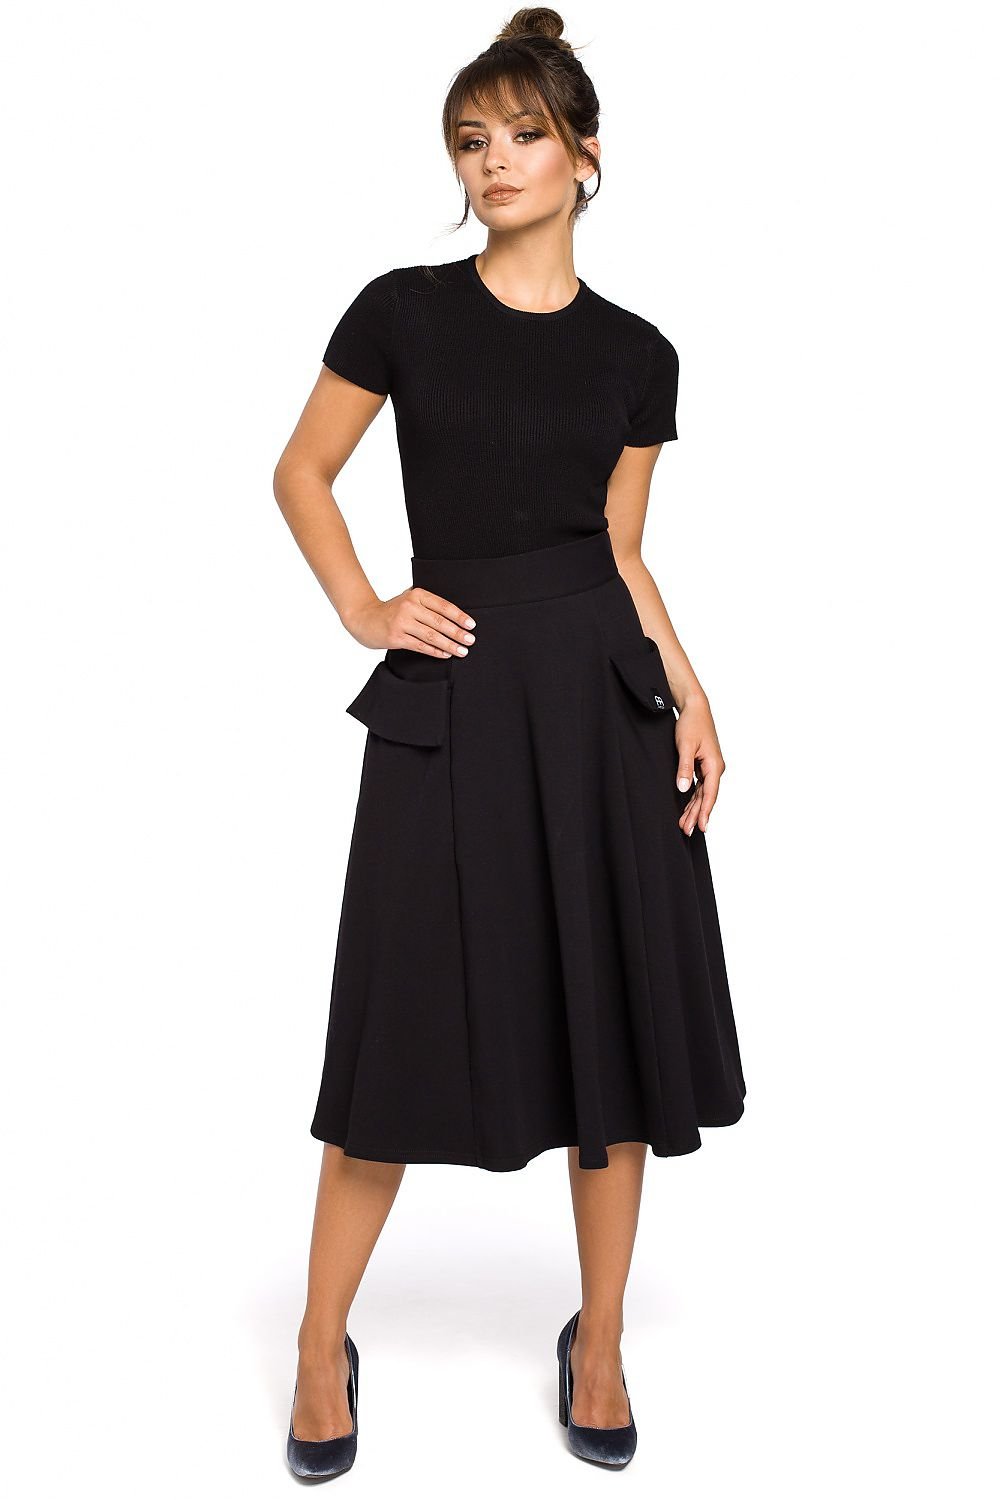 Jupe cargo noire mi-longue avec poches latérales pour un look tendance et pratique, parfaite pour une tenue décontractée ou professionnelle.